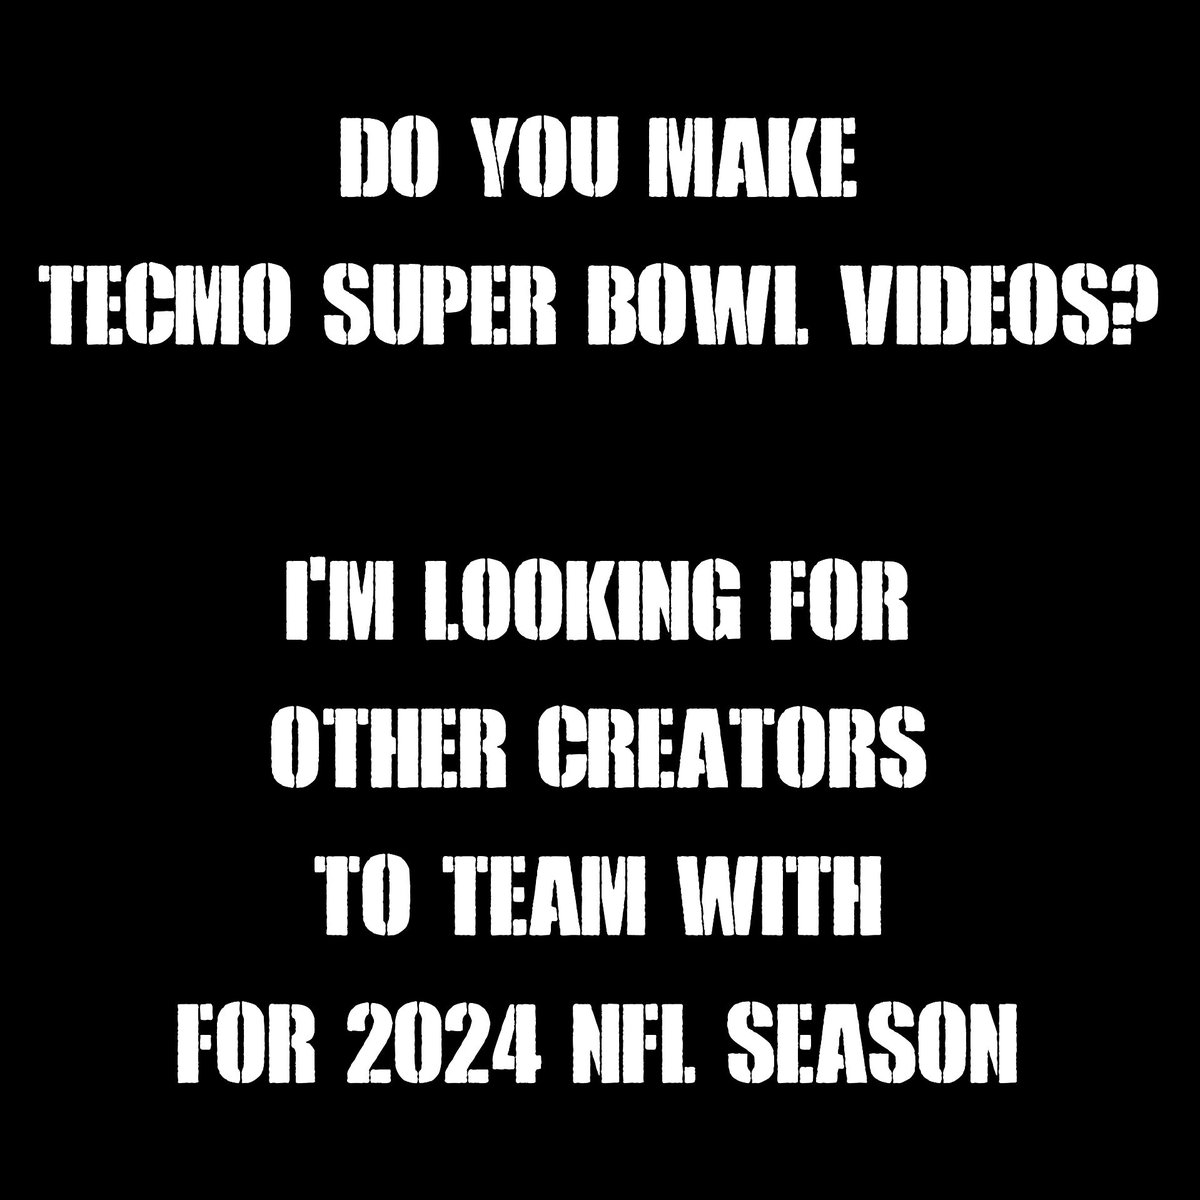 🚨 Calling All #TecmoSuperBowl Creators 🚨
Let's Make The 2024 #NFL Season Fantastic
📩 Message Me For Details 📩